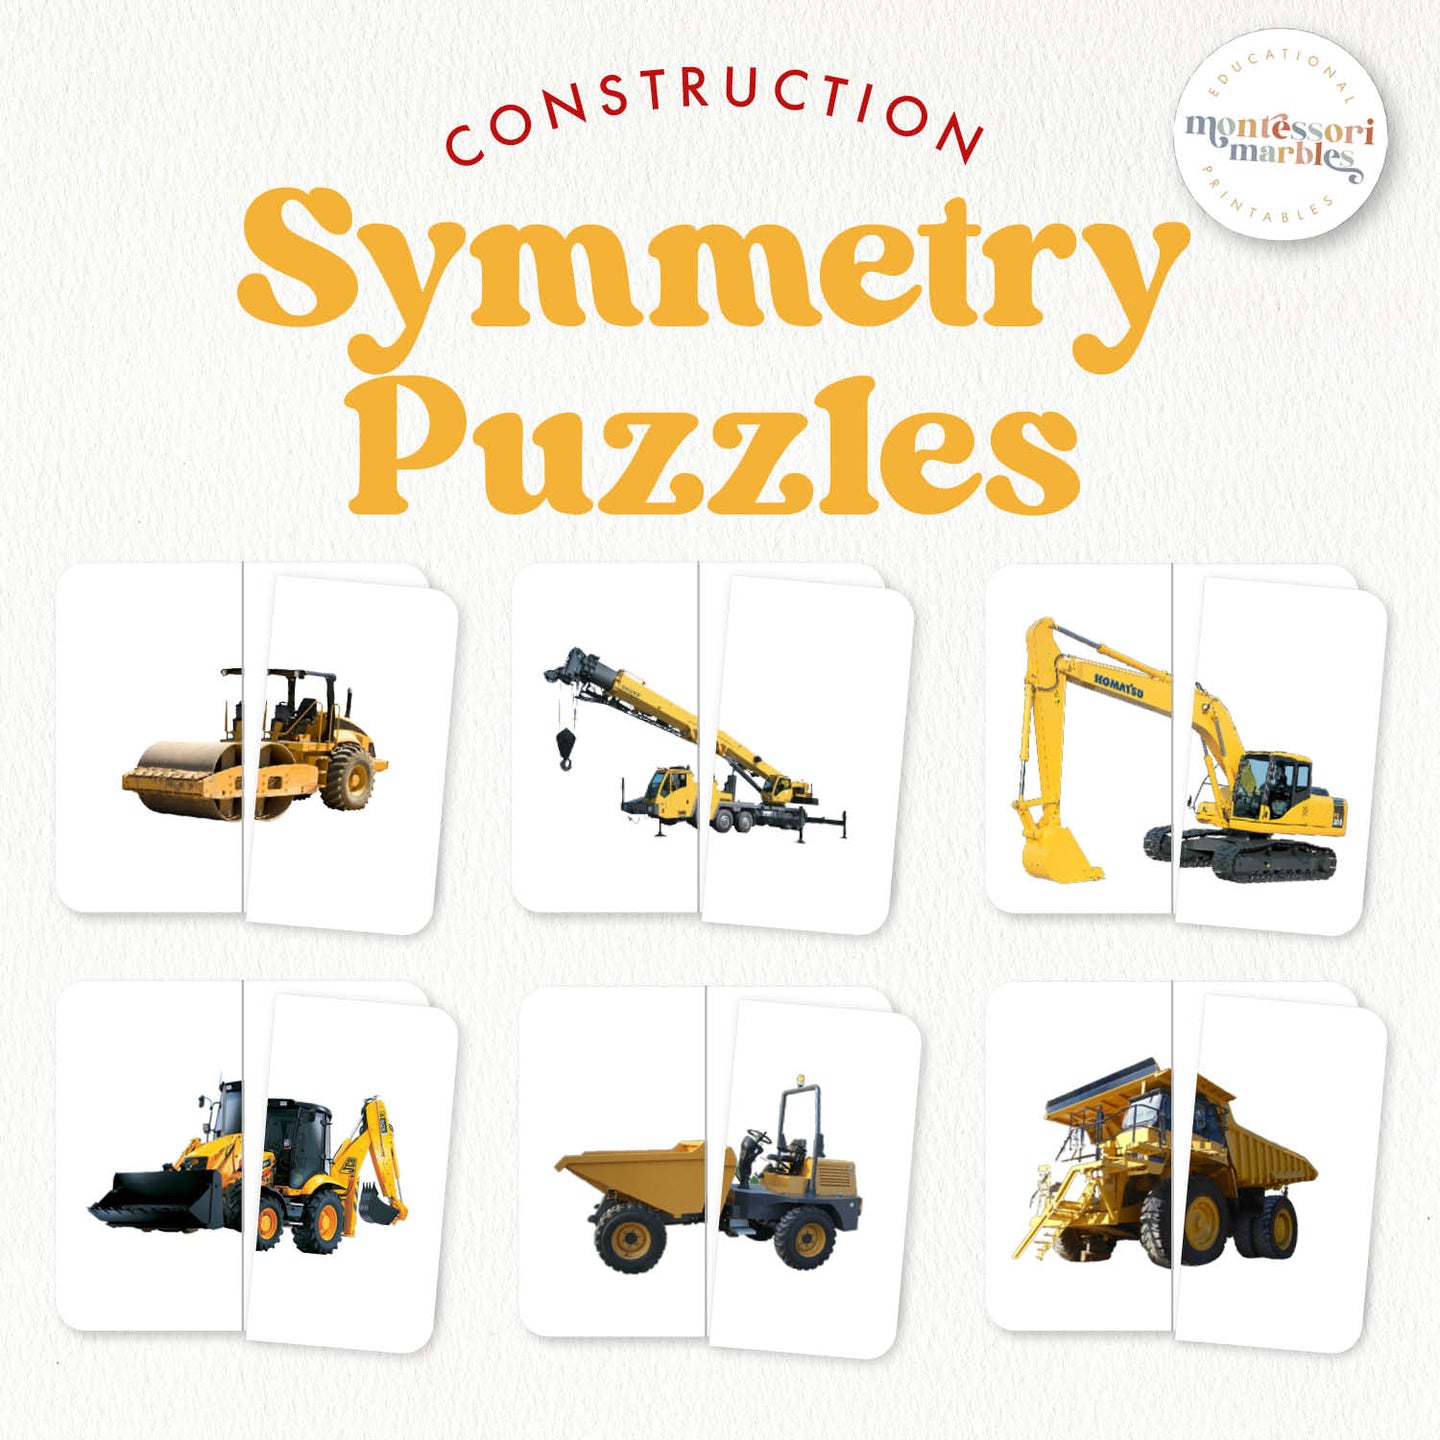 Construction Vehicles Symmetry Puzzles